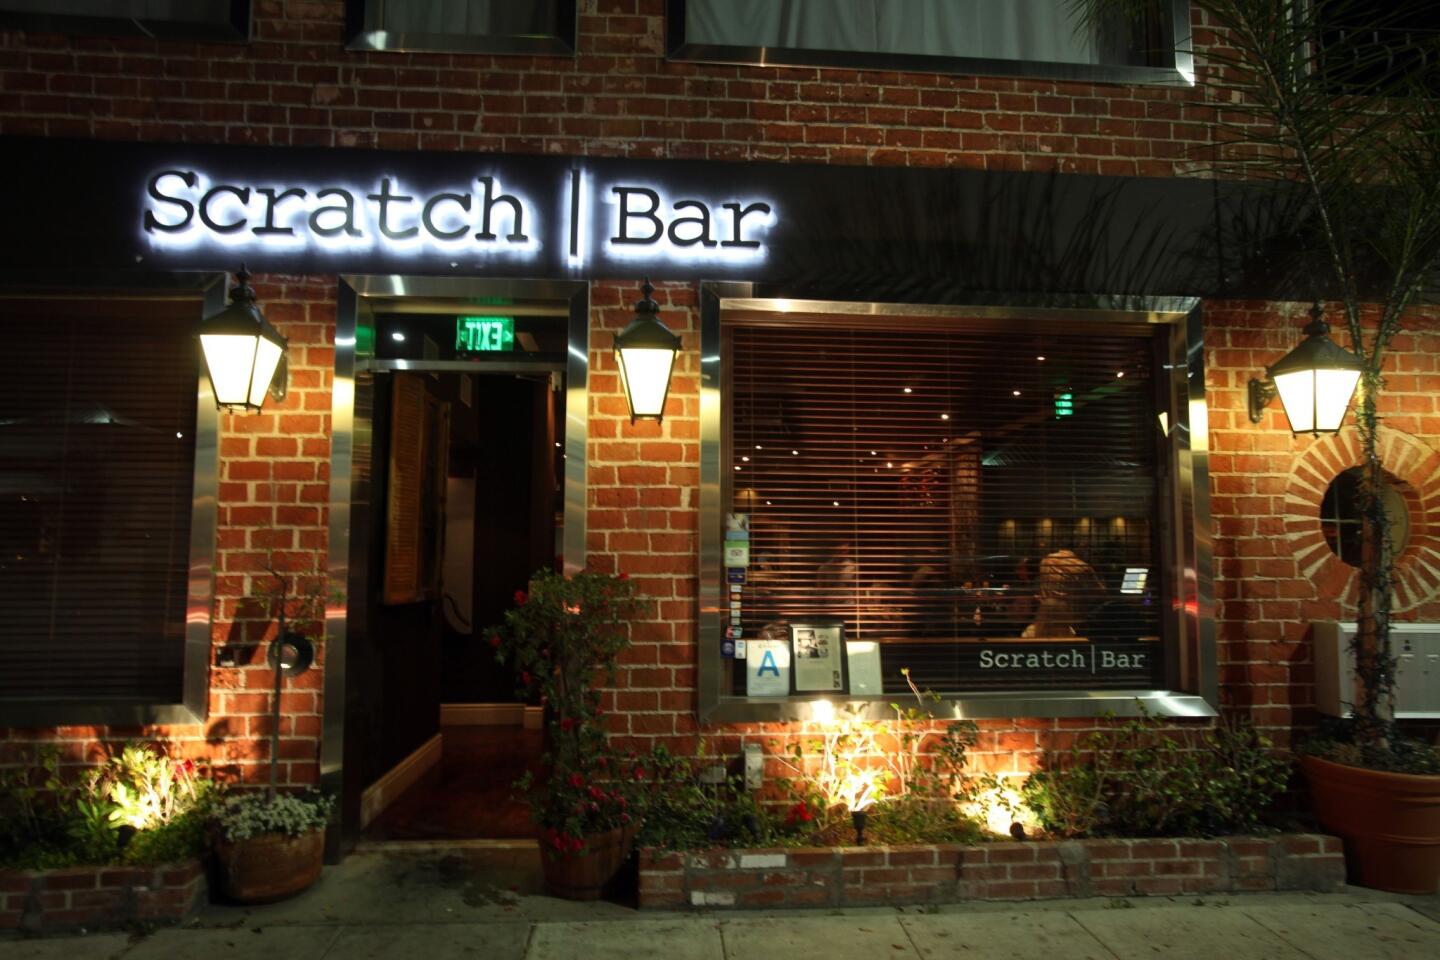 Scratch Bar gastropub